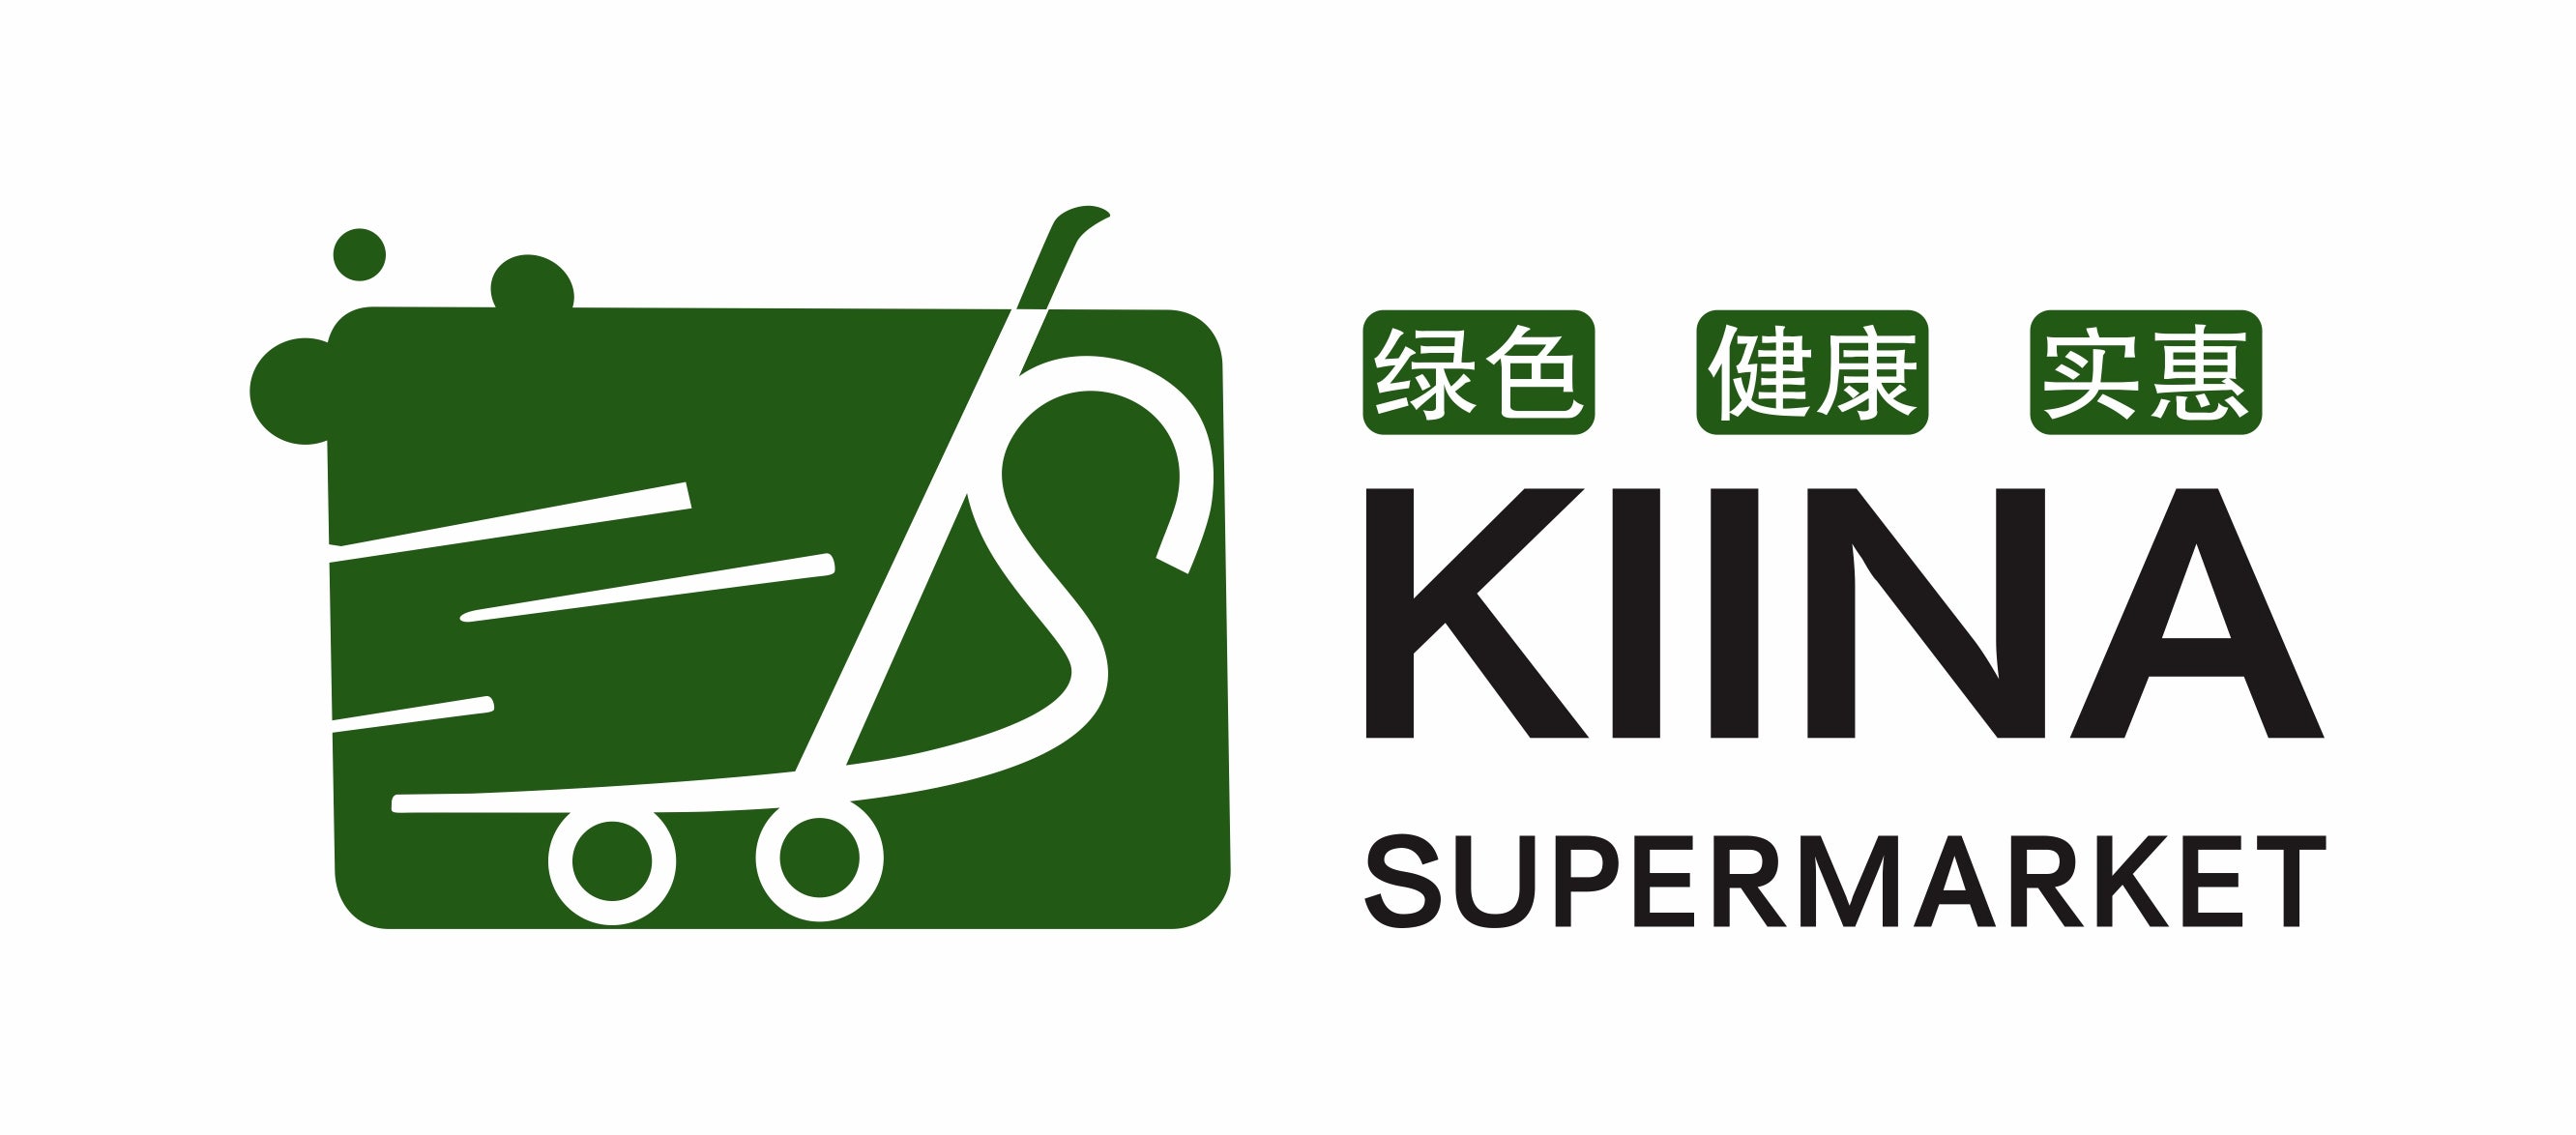 Kiina Supermarket